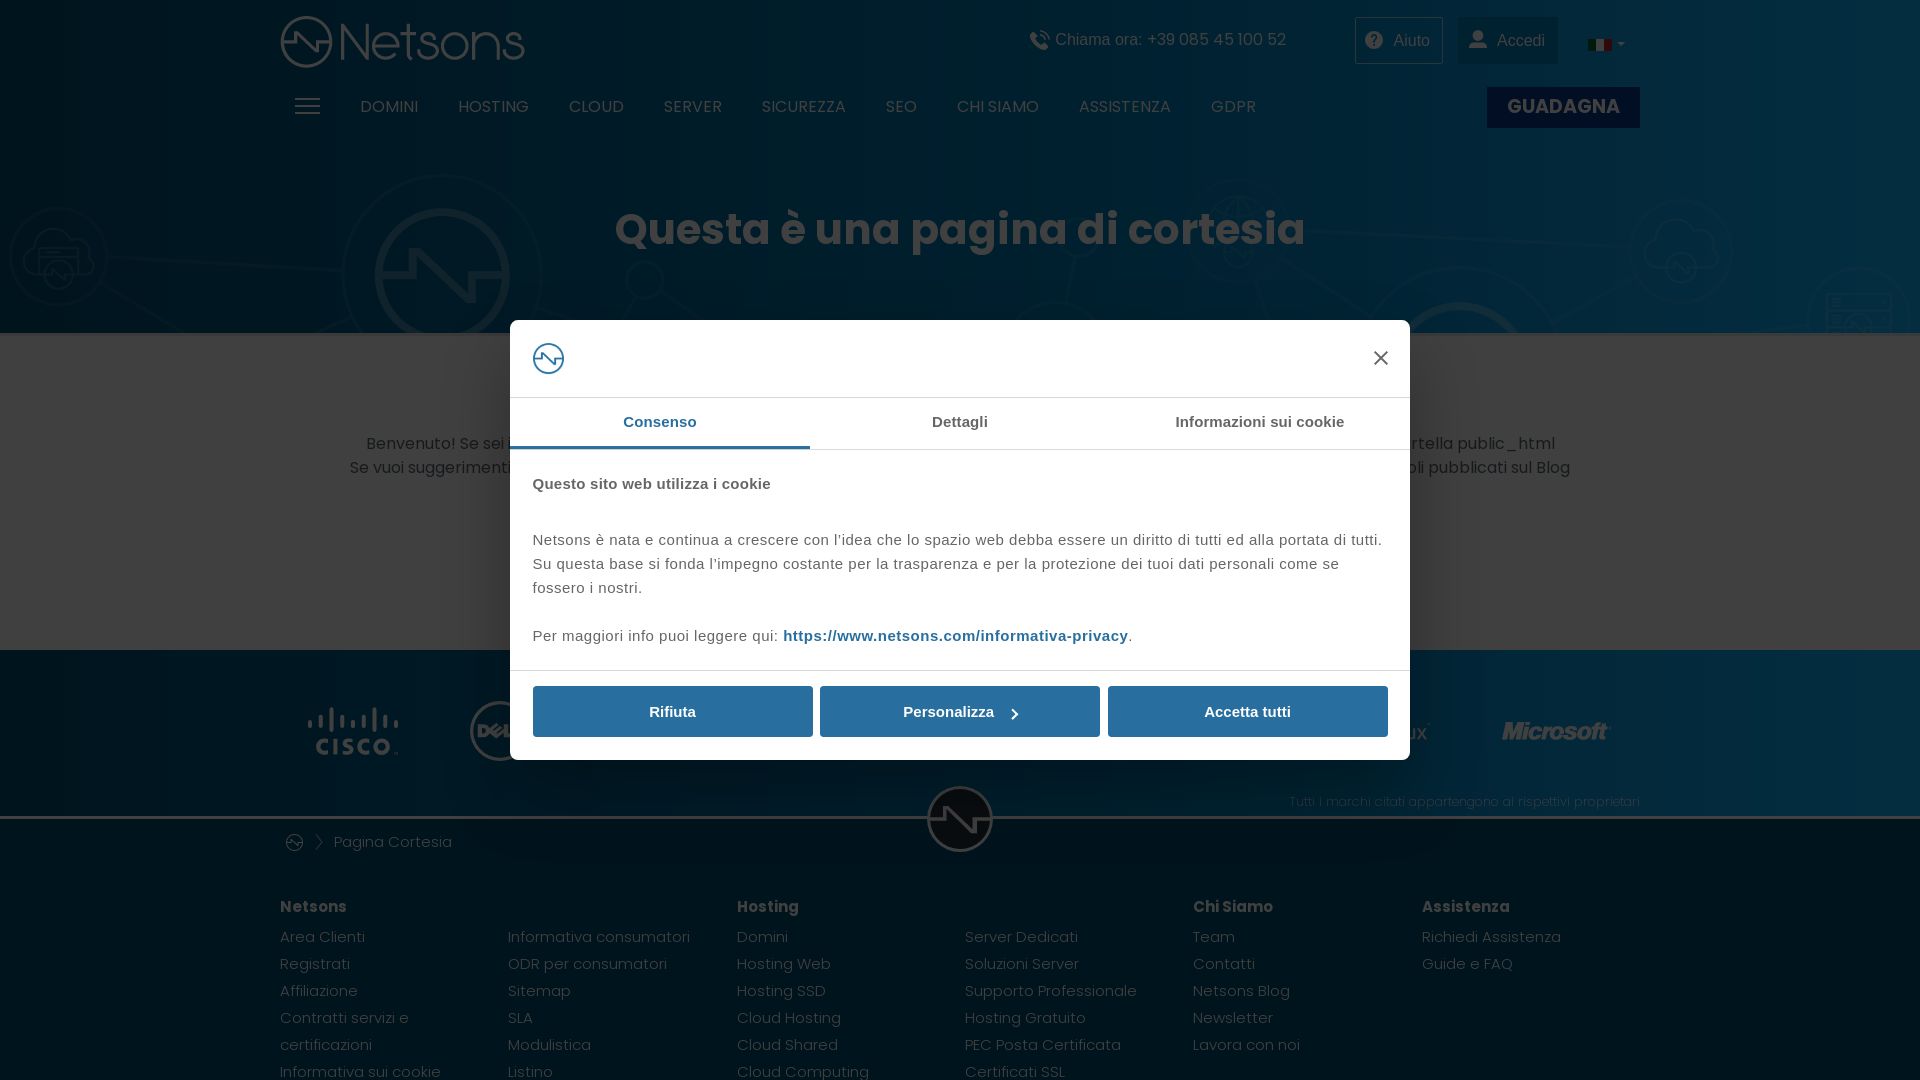 Status do site enricobianchi.it está   ONLINE